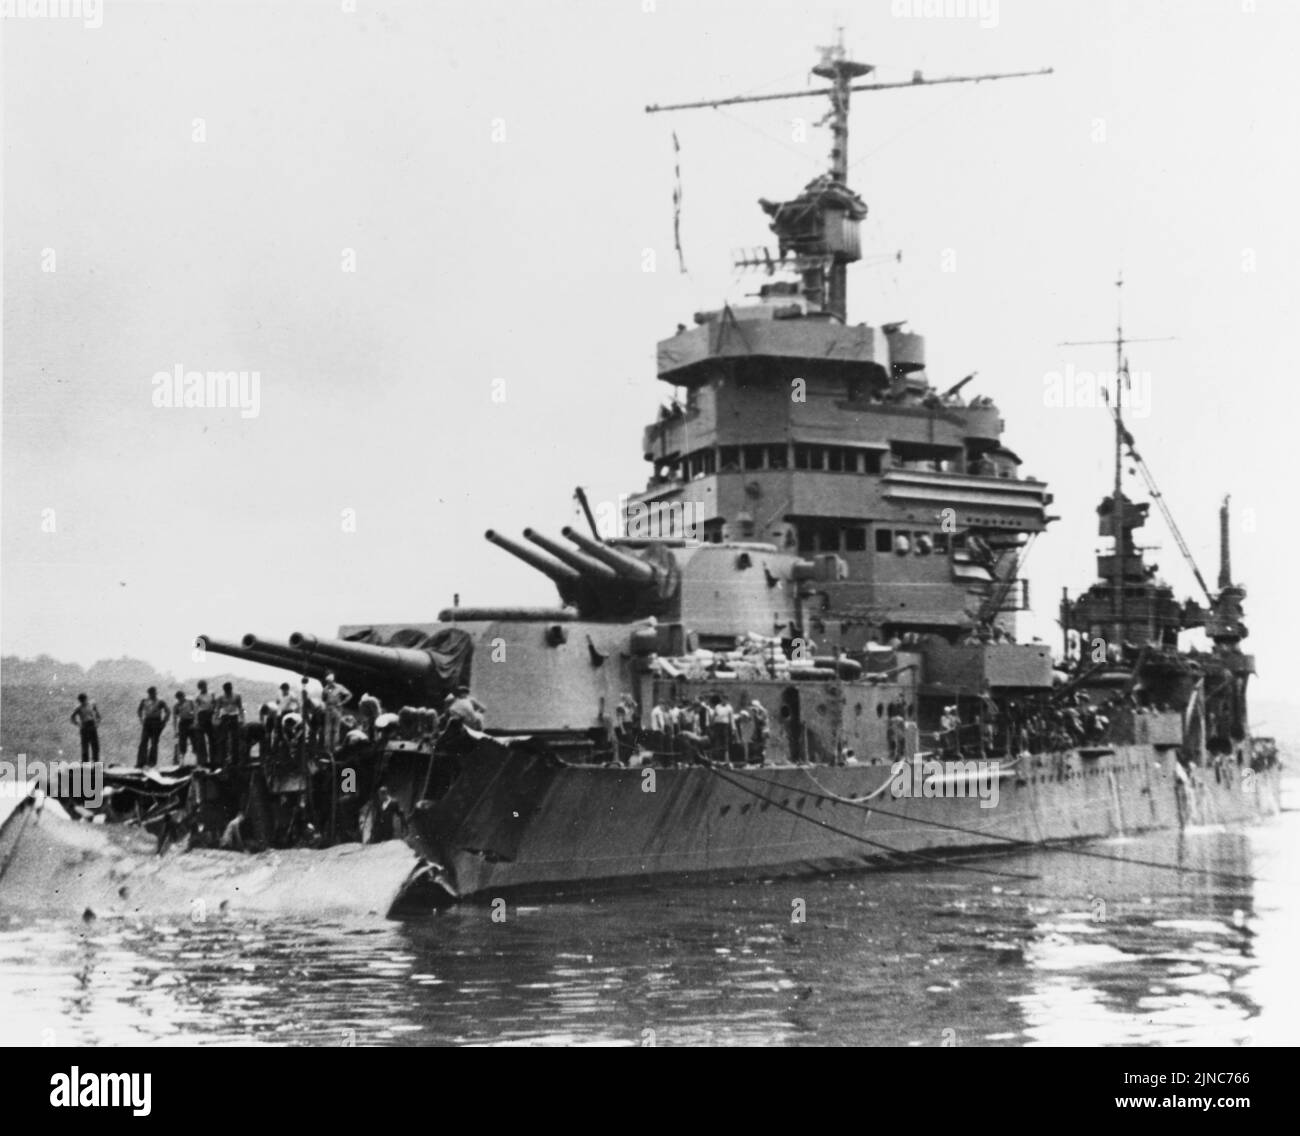 El crucero pesado USS Minneapolis (CA-36) de la Marina de los EE.UU. En Tulagi con daños de torpedos recibidos en la Batalla de Tassafaronga, la noche anterior. La fotografía fue tomada el 1 de diciembre de 1942, cuando los trabajos comenzaron a cortar los restos de su arco. Foto de stock